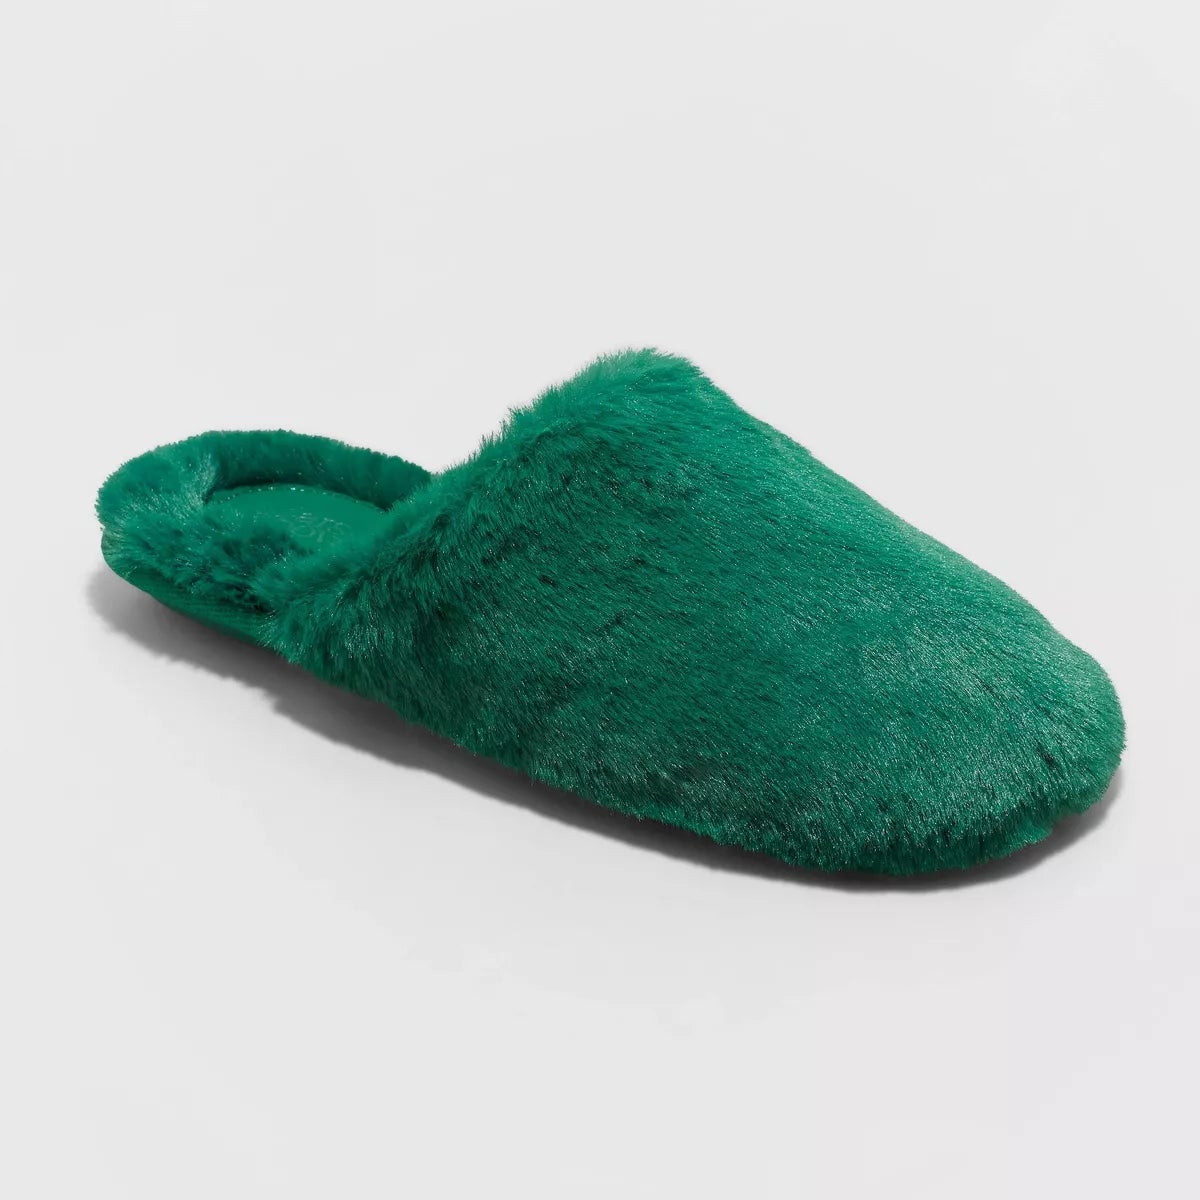 ISOTONER SLIPPERS | Isotoner slippers, Slippers, Sunglasses case